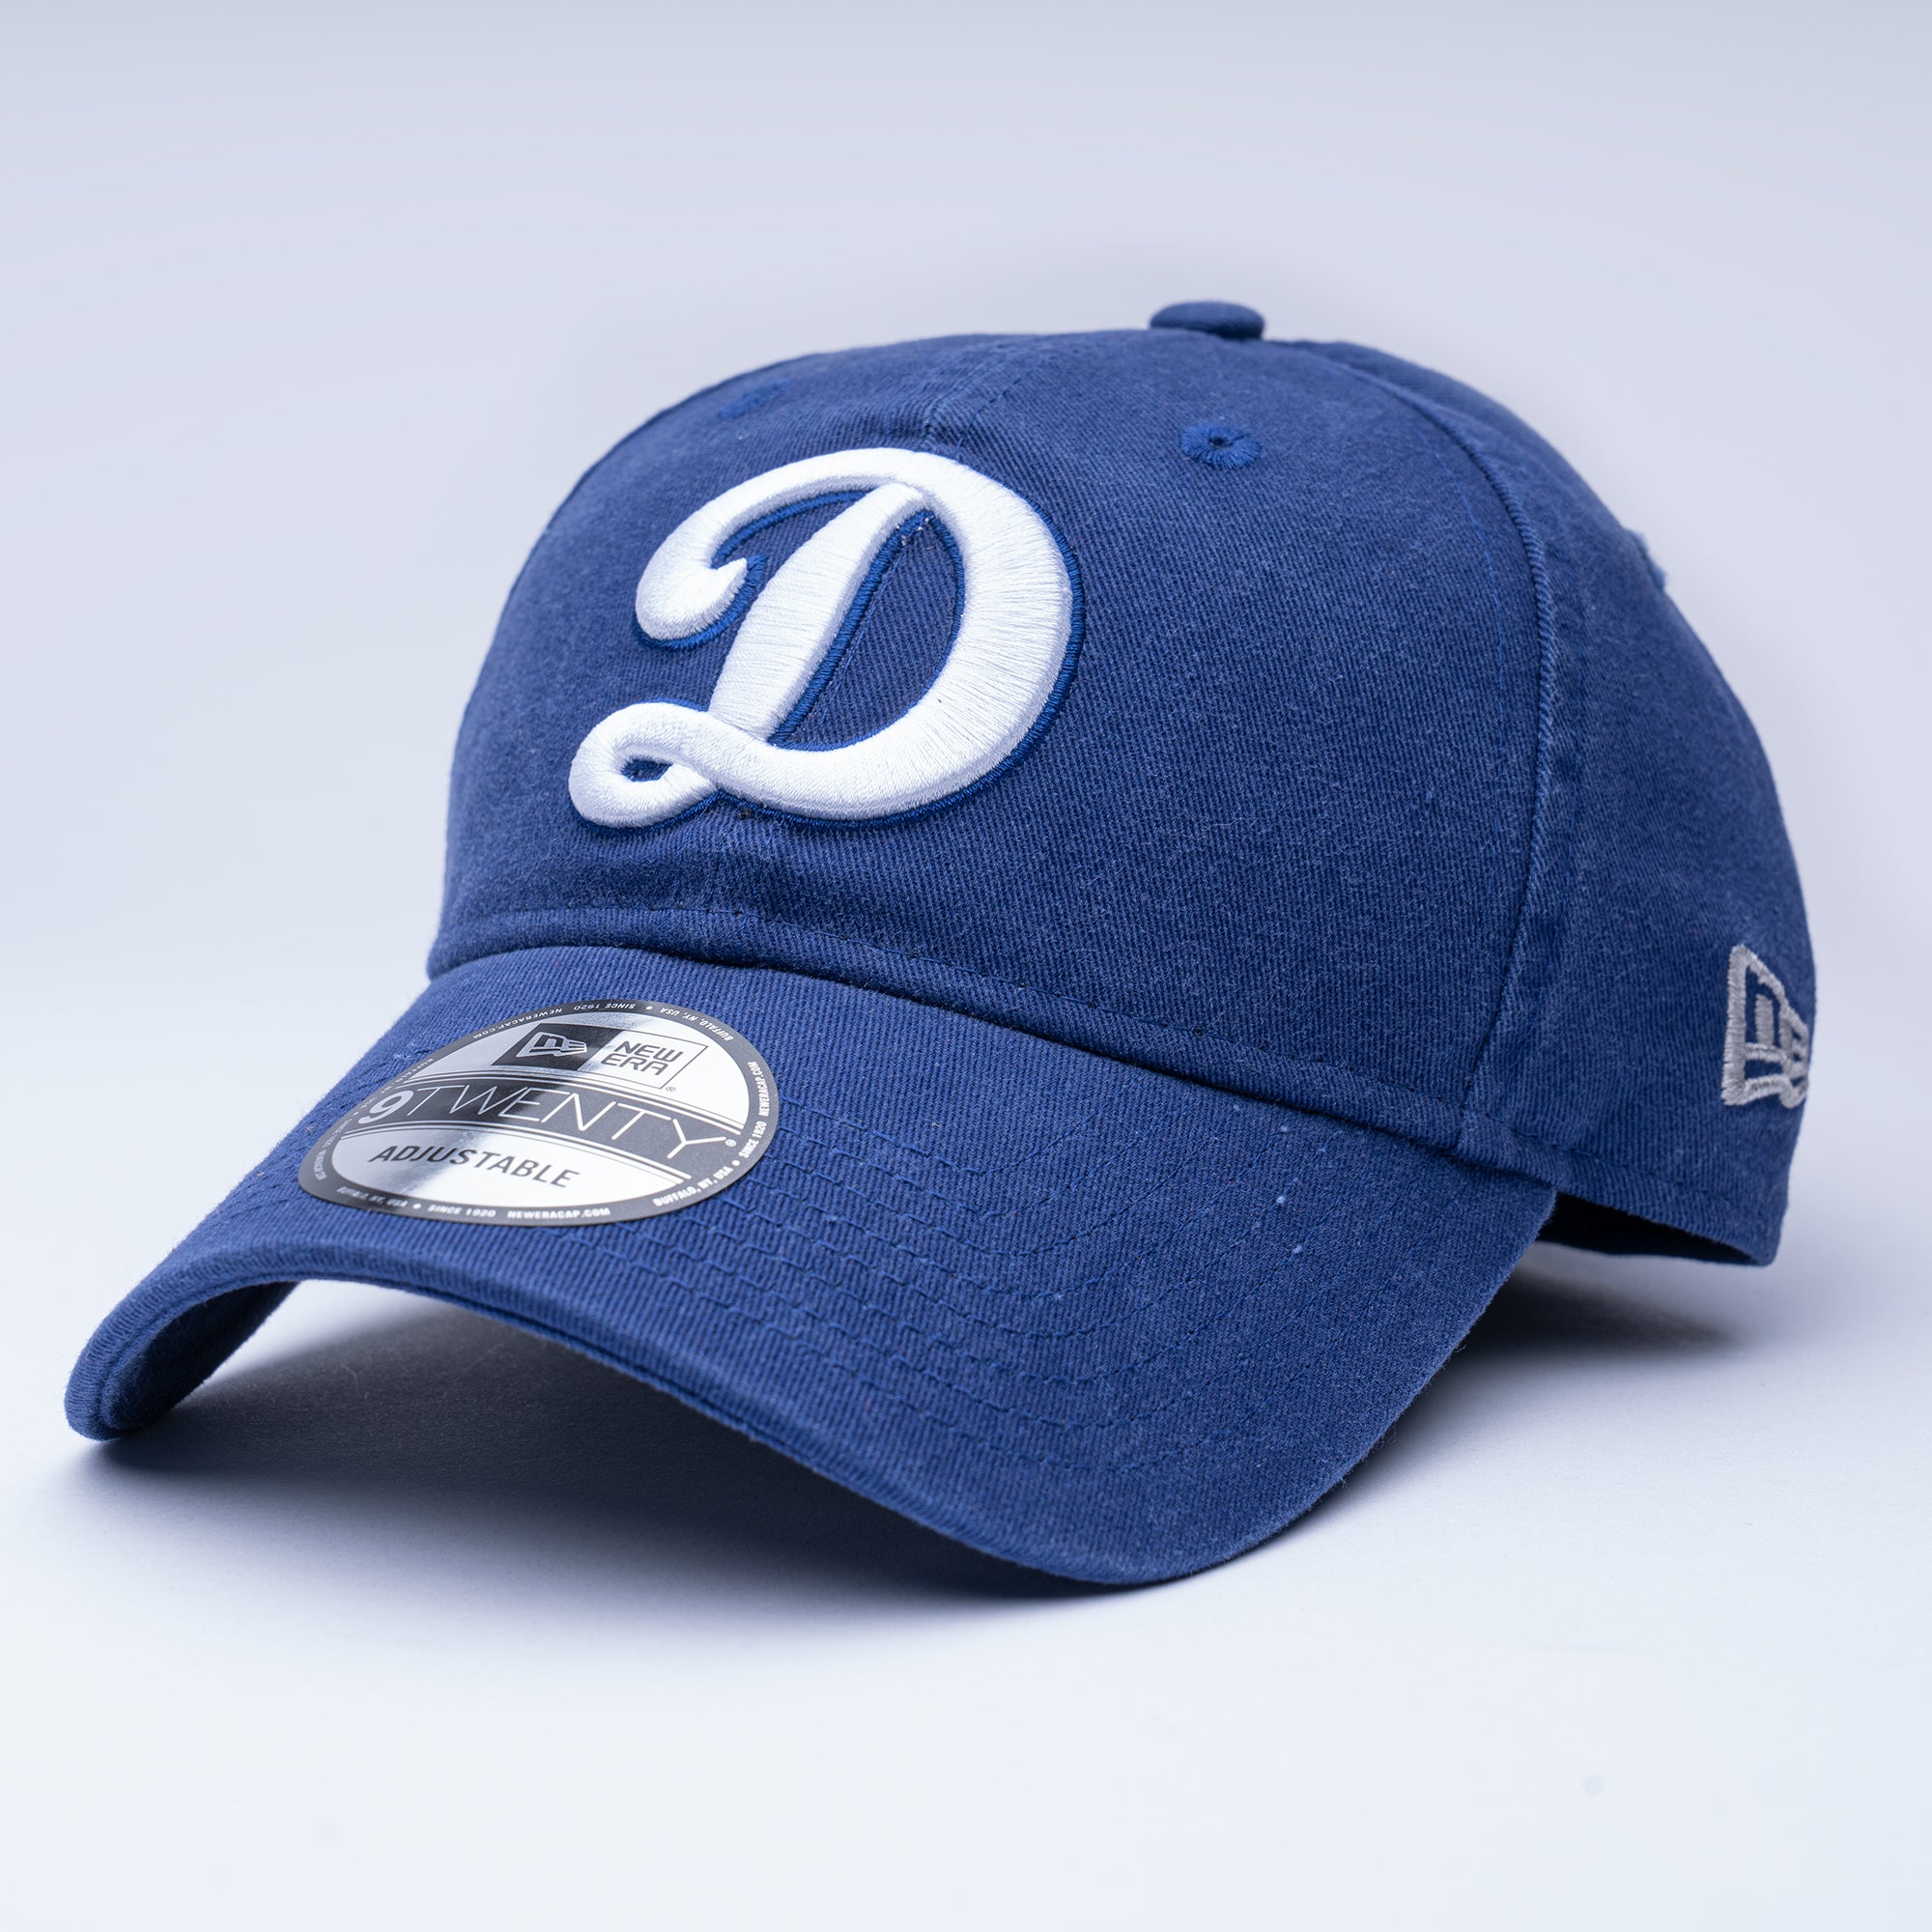 Dodgers Core 9twenty Adjustable Cap